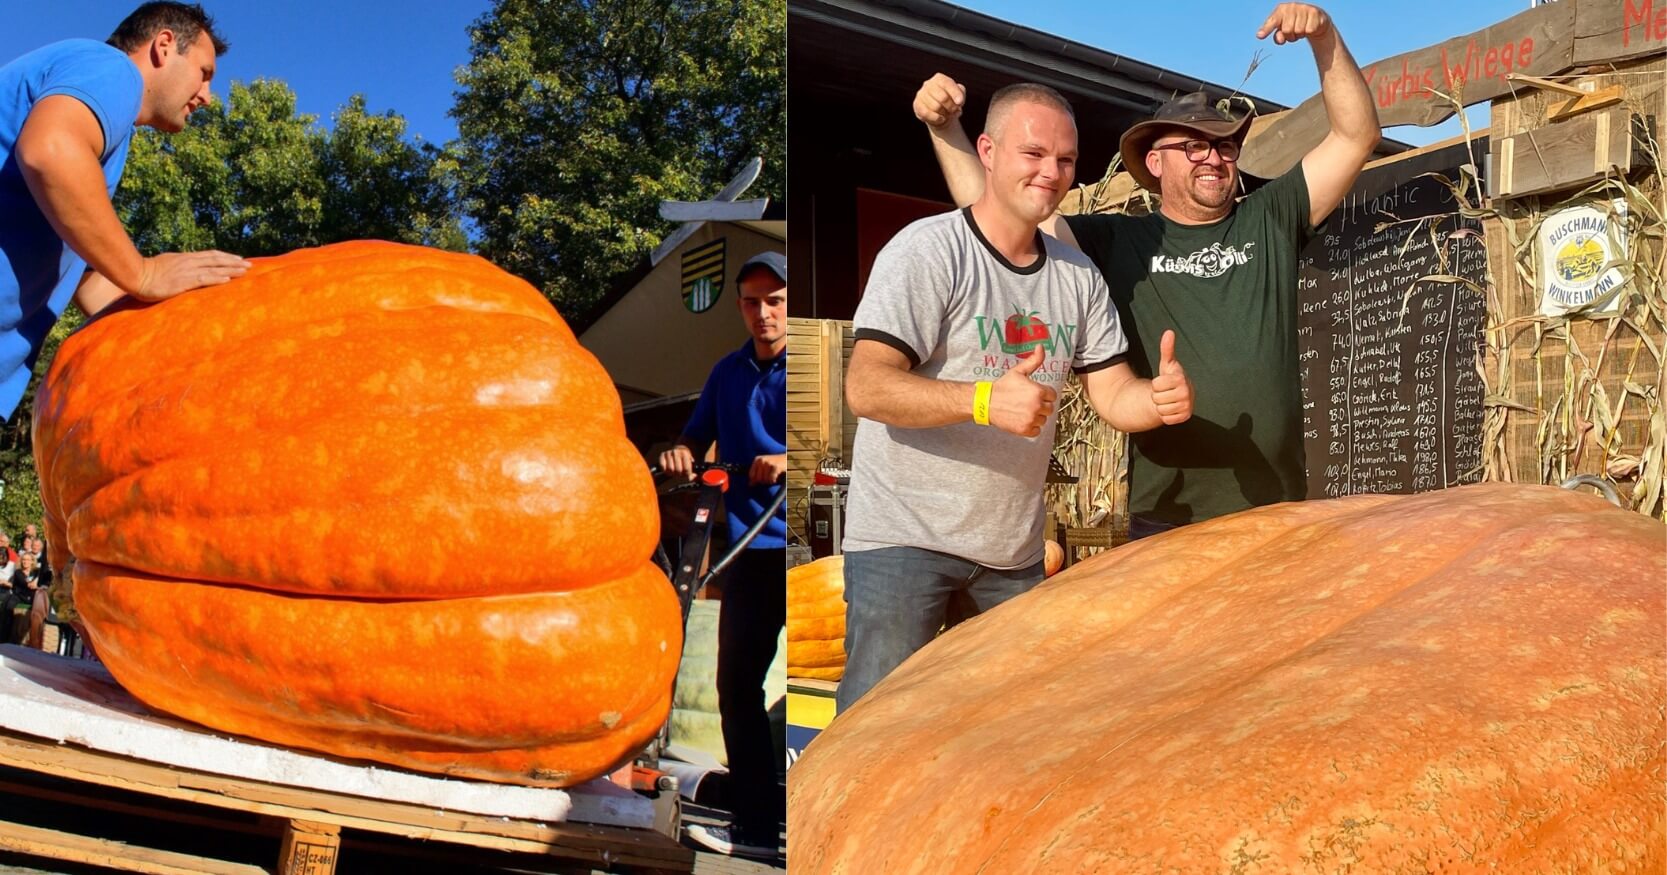 Größtes Kürbiswiegen der Welt - World's biggest Pumpkin Weighing